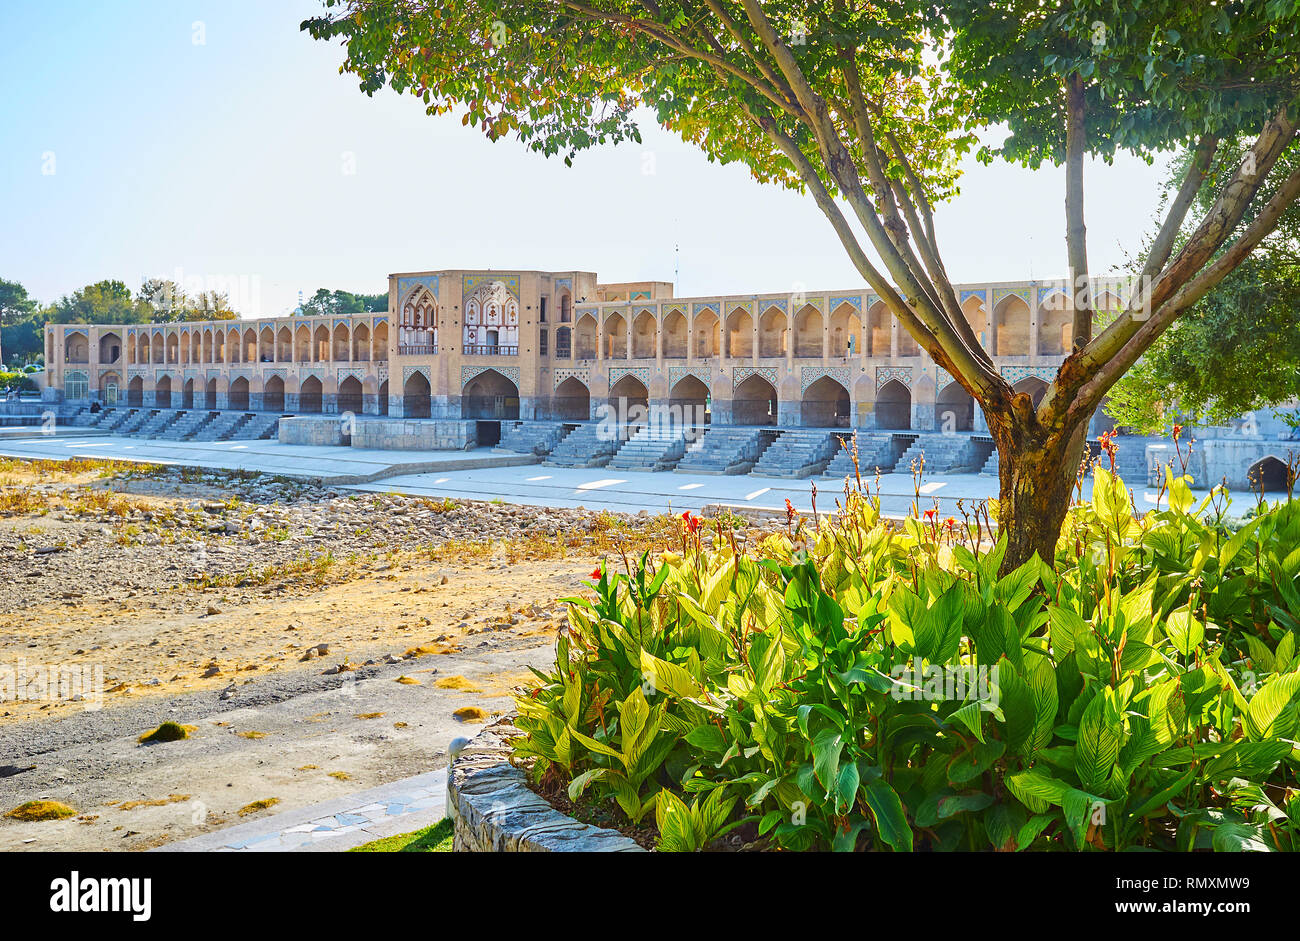 Regardez le pont Khaju brique médiévale et séché Zayanderud rivière à travers la végétation luxuriante de Moshtagh park, Isfahan, Iran. Banque D'Images